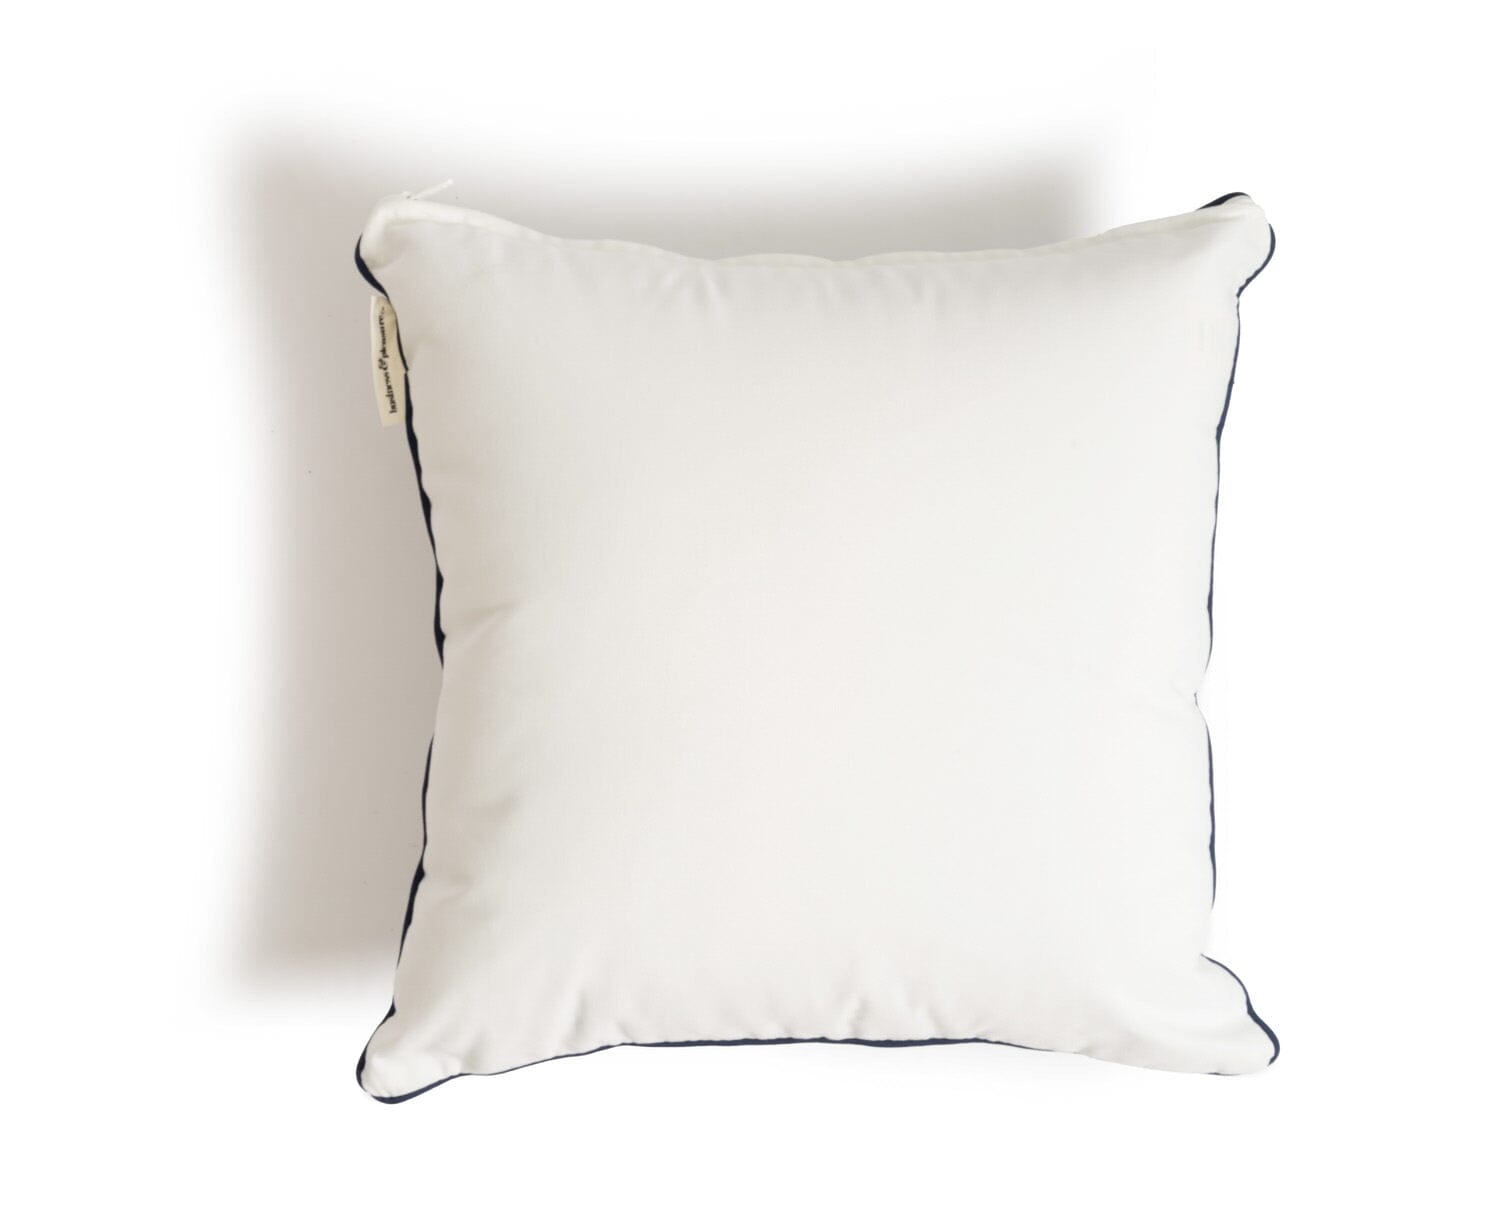 The Euro Throw Pillow - Rivie White Euro Throw Pillow Business & Pleasure Co Aus 